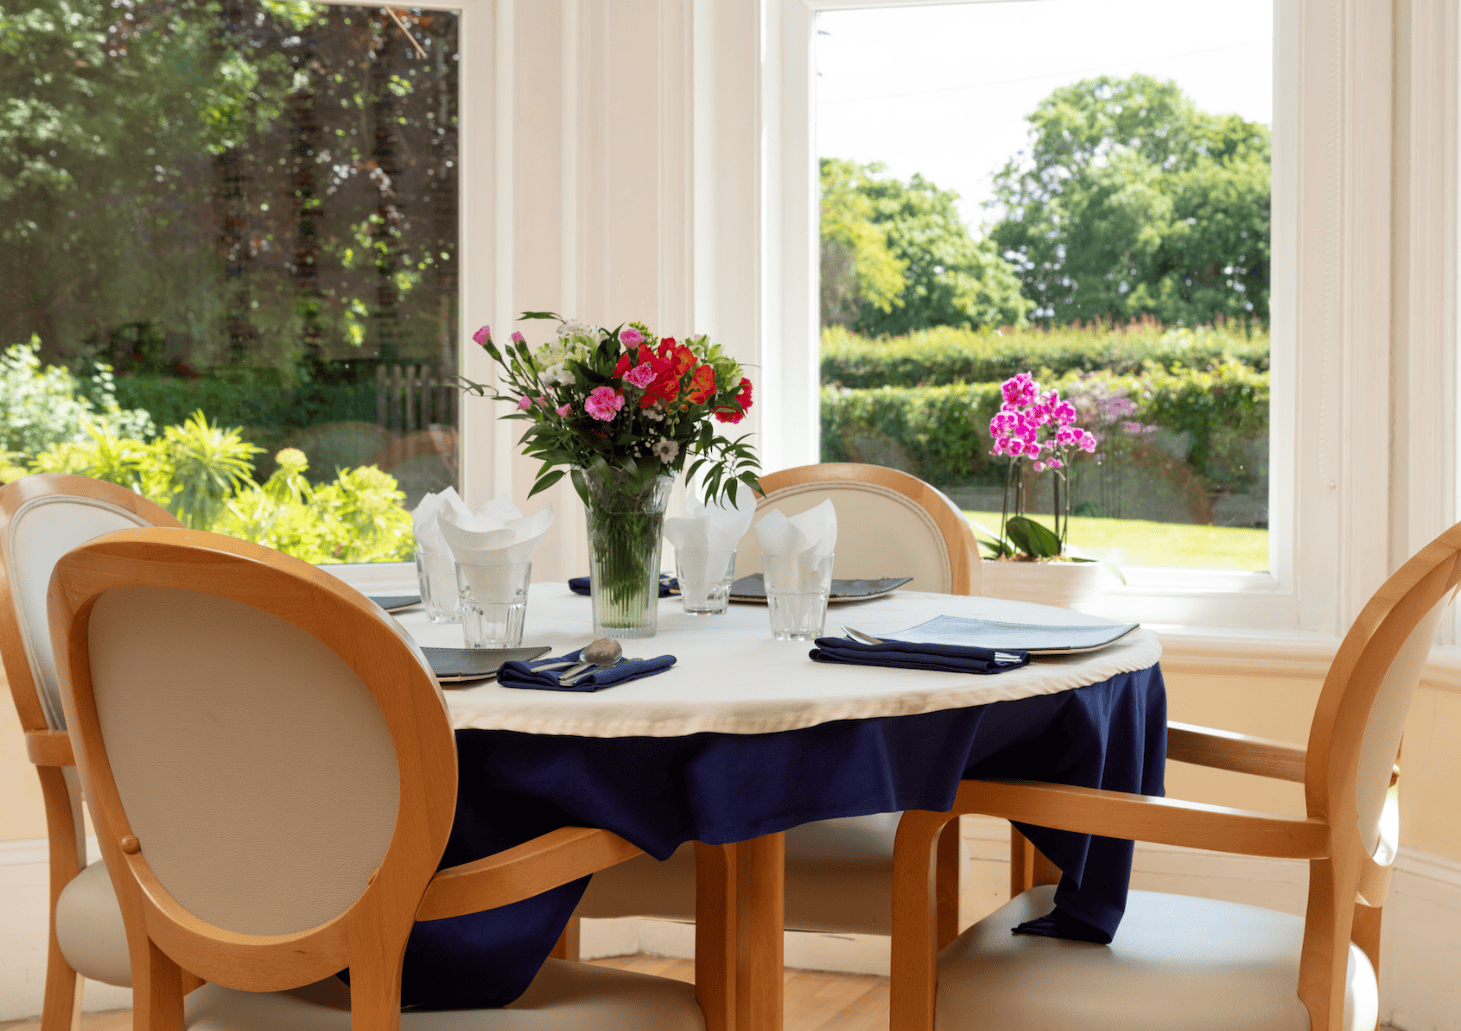 Dining area of Hailsham House in Hailsham, East Sussex